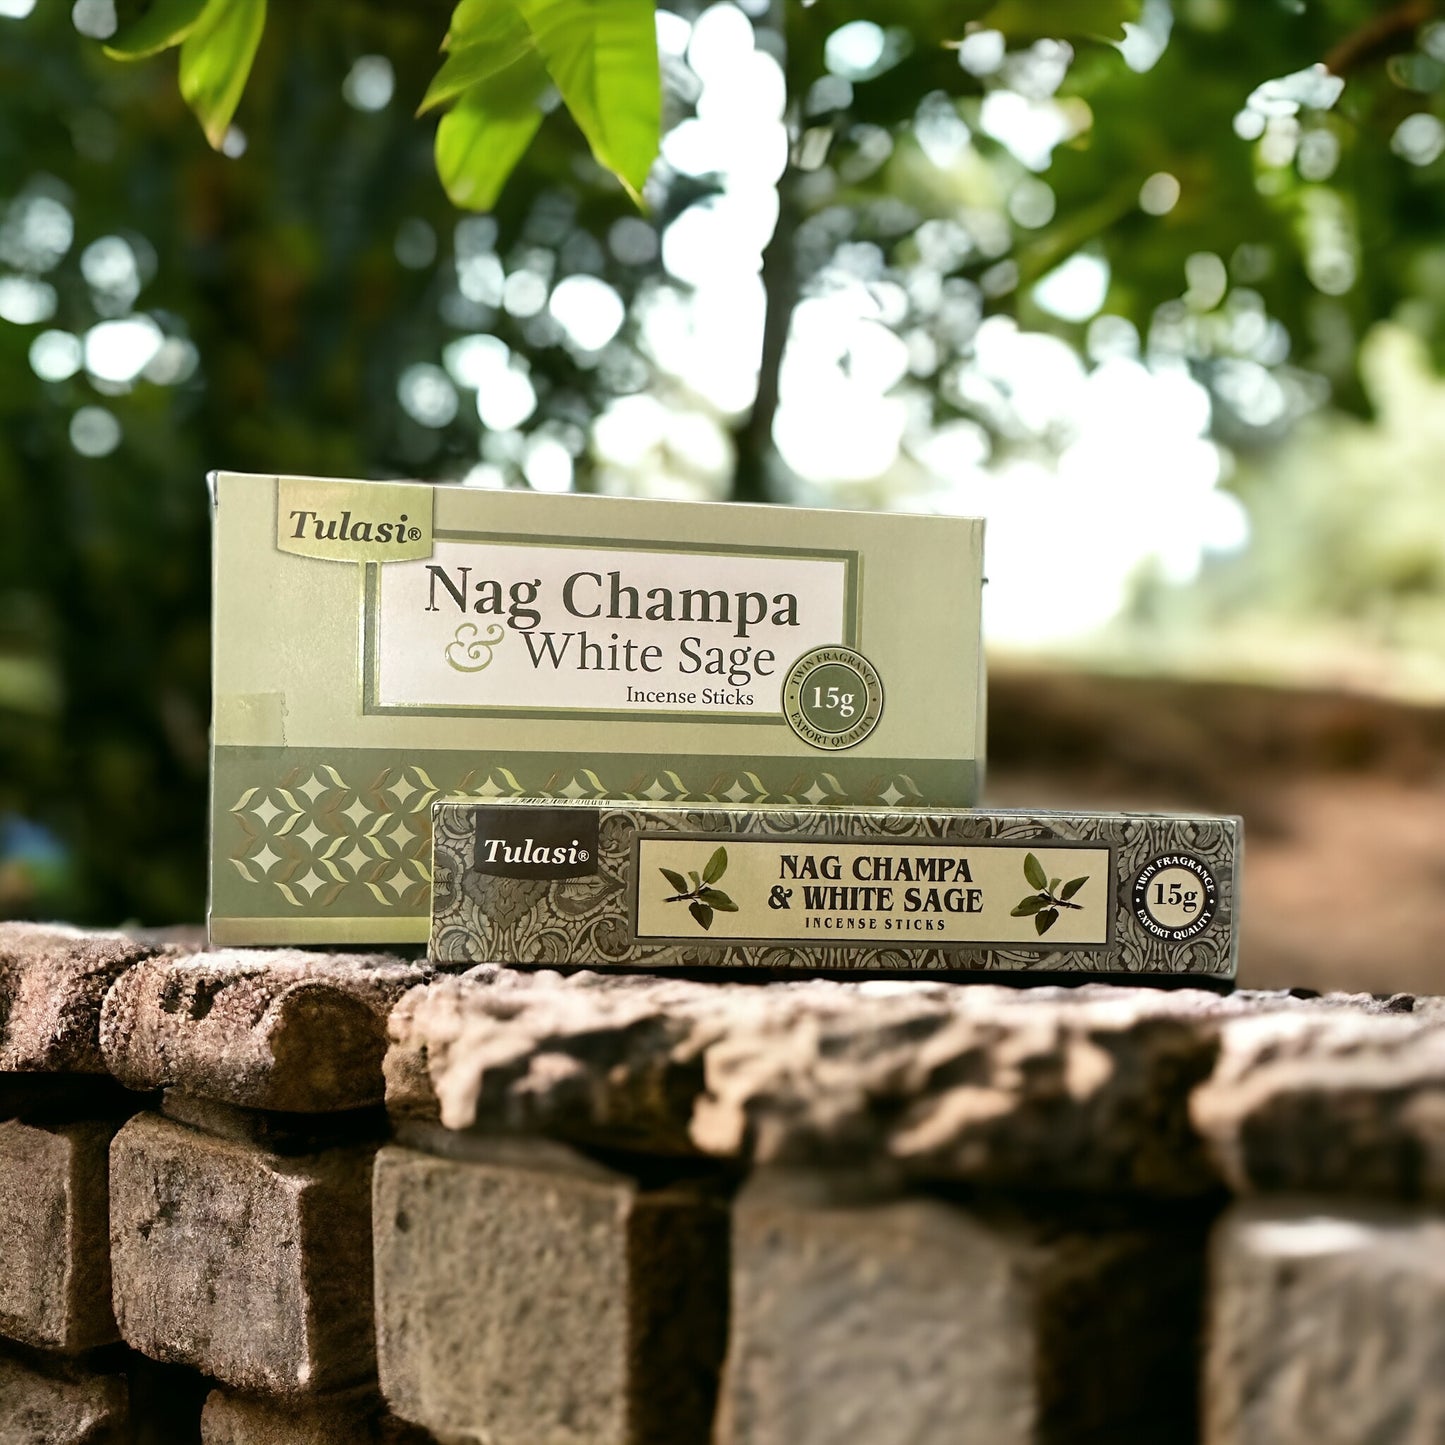 Tulasi Nag Champa & White Sage incense sticks